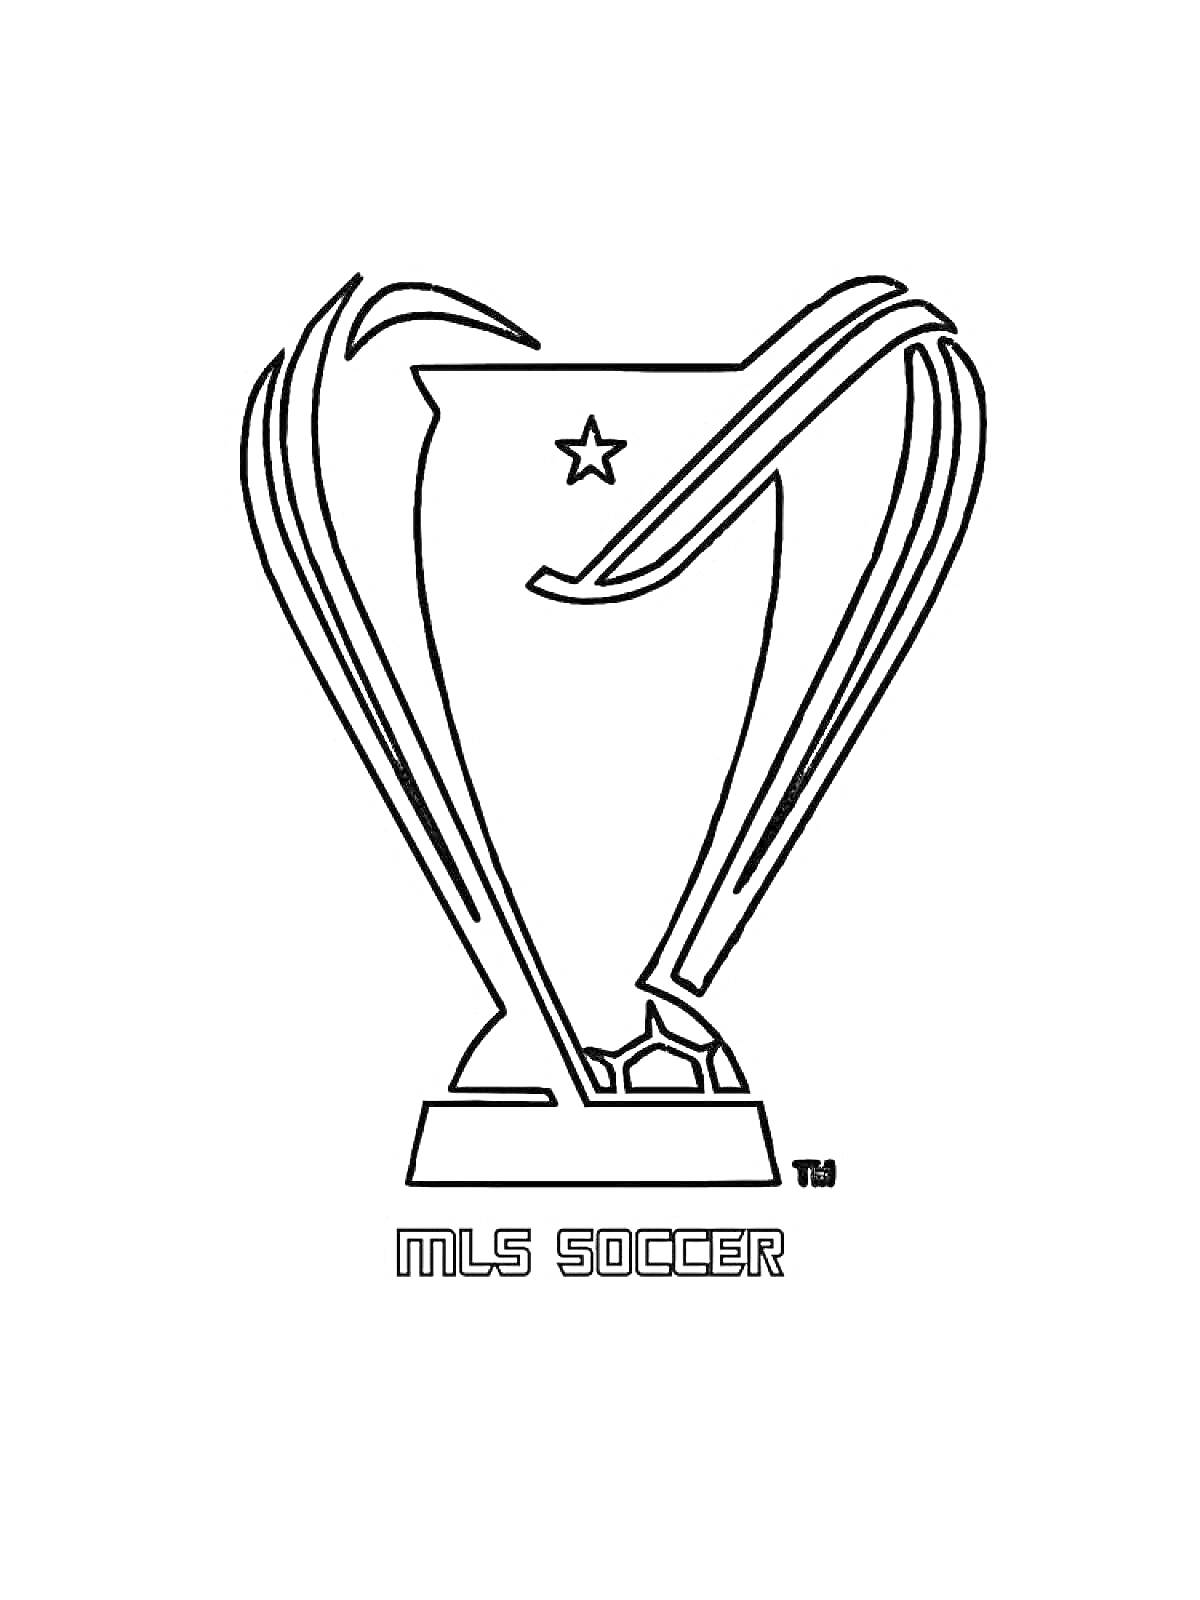 Раскраска Кубок MLS Soccer с звездой и логотипом